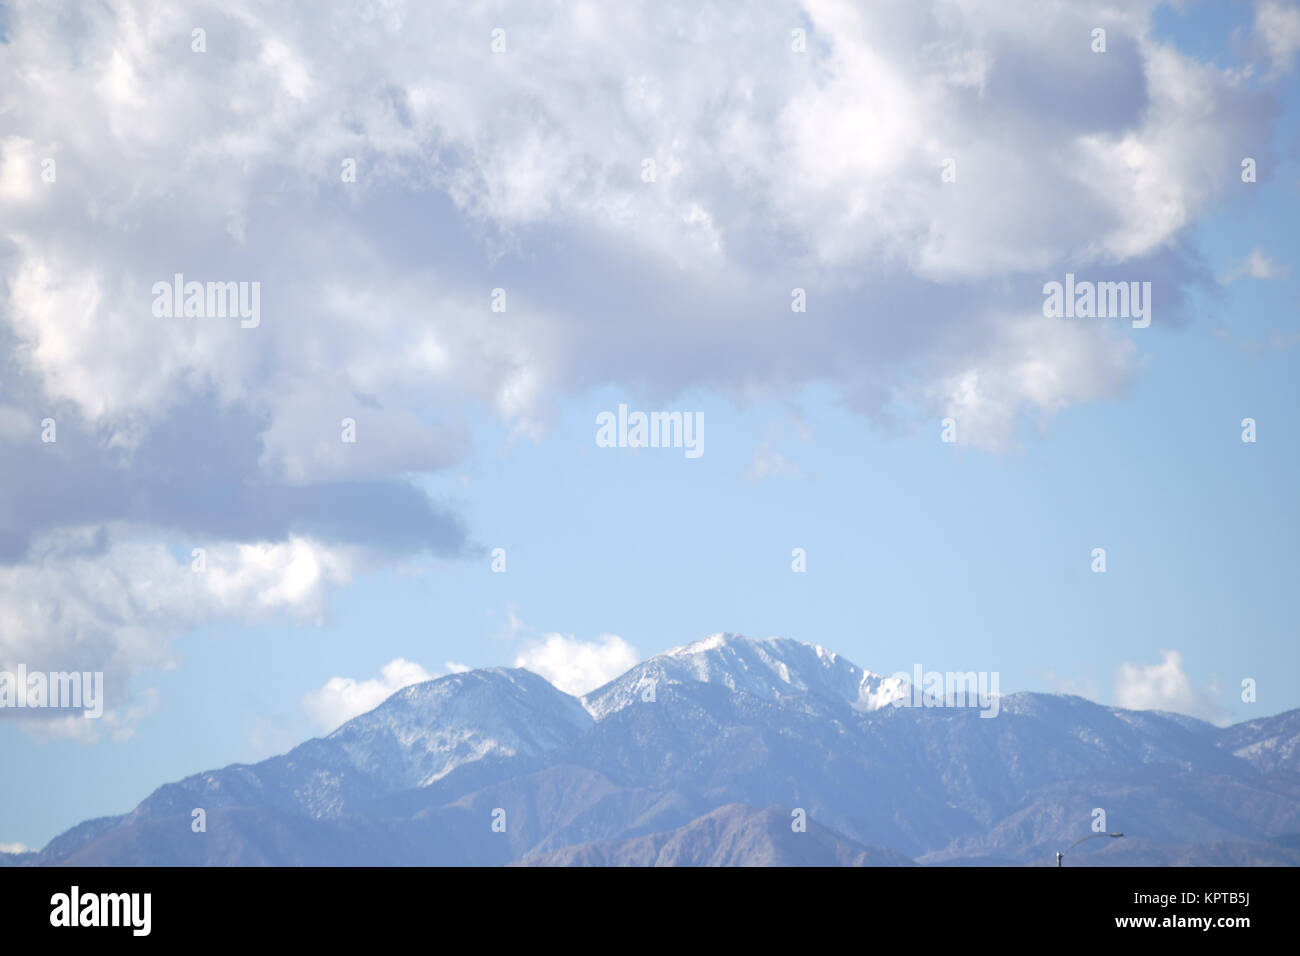 Der schneebedeckte Gipfel des Berg San Jacinto in den San Jacinto Bergen mit Wolken über den Bergen. Stock Photo